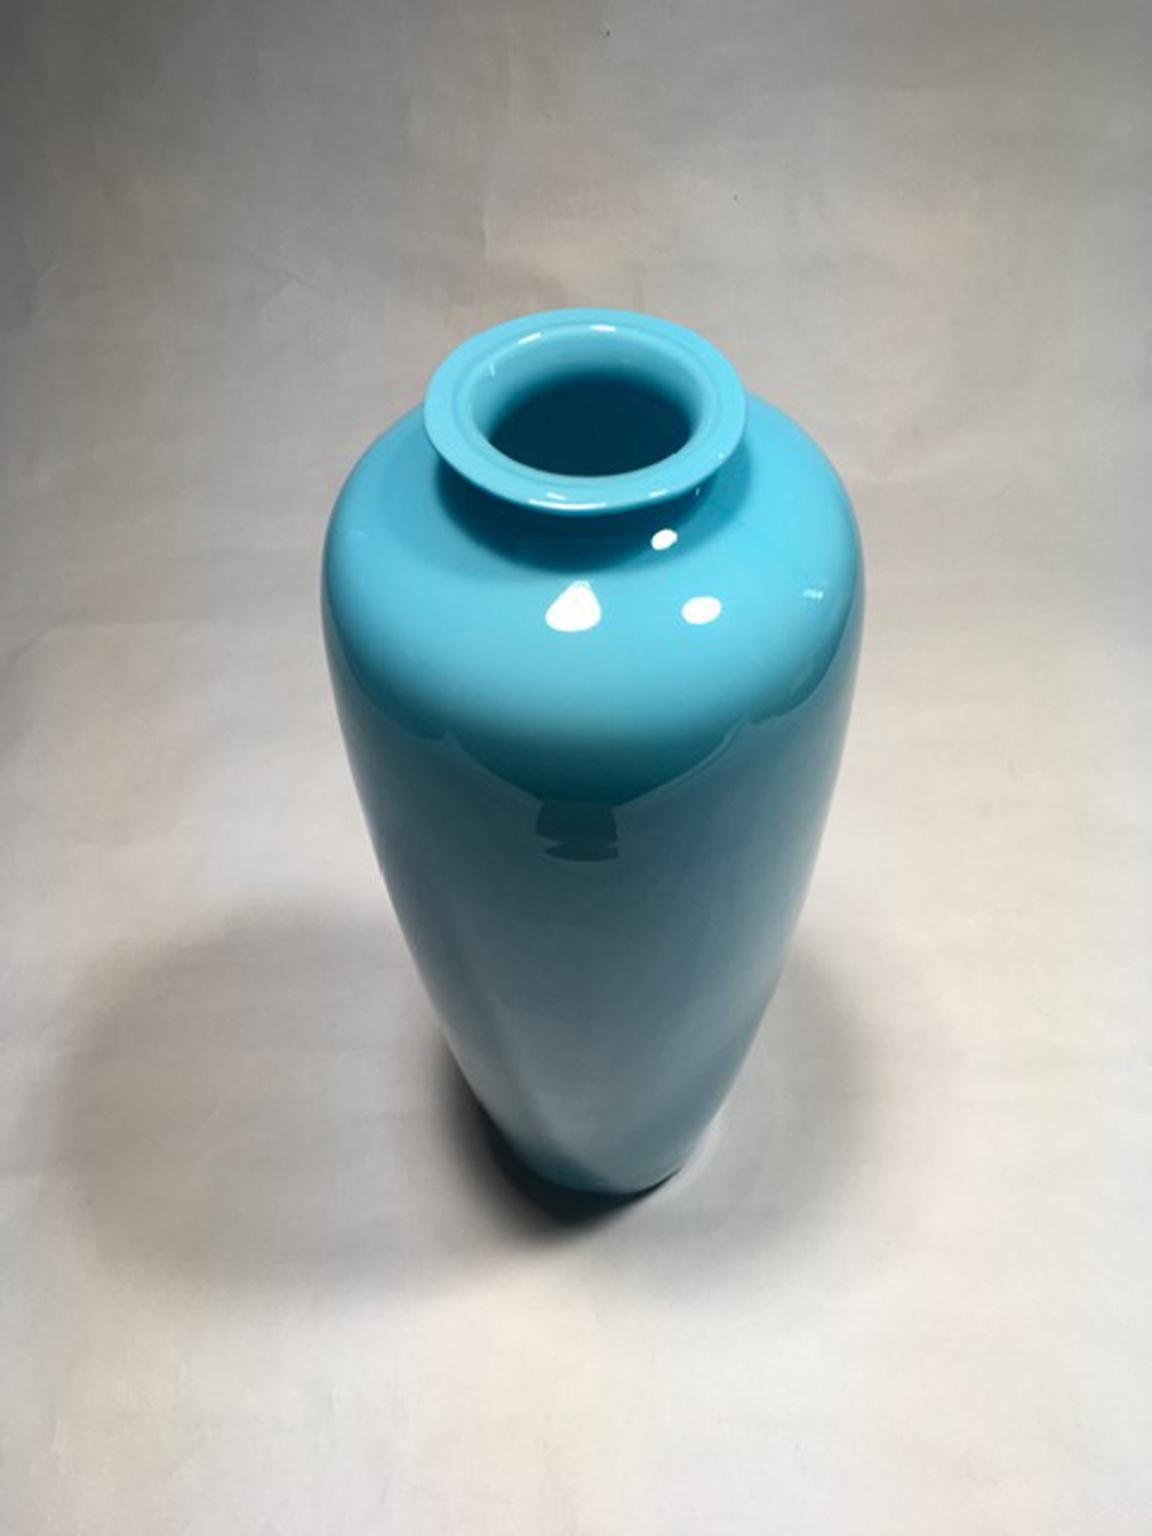 Diese postmoderne Murano-Glasvase hat einen sehr eleganten und zarten hellblauen Ton.
Da es sich nicht um eine industrielle Produktion handelt, weist die Vase einige kleine Unregelmäßigkeiten in der Form auf.